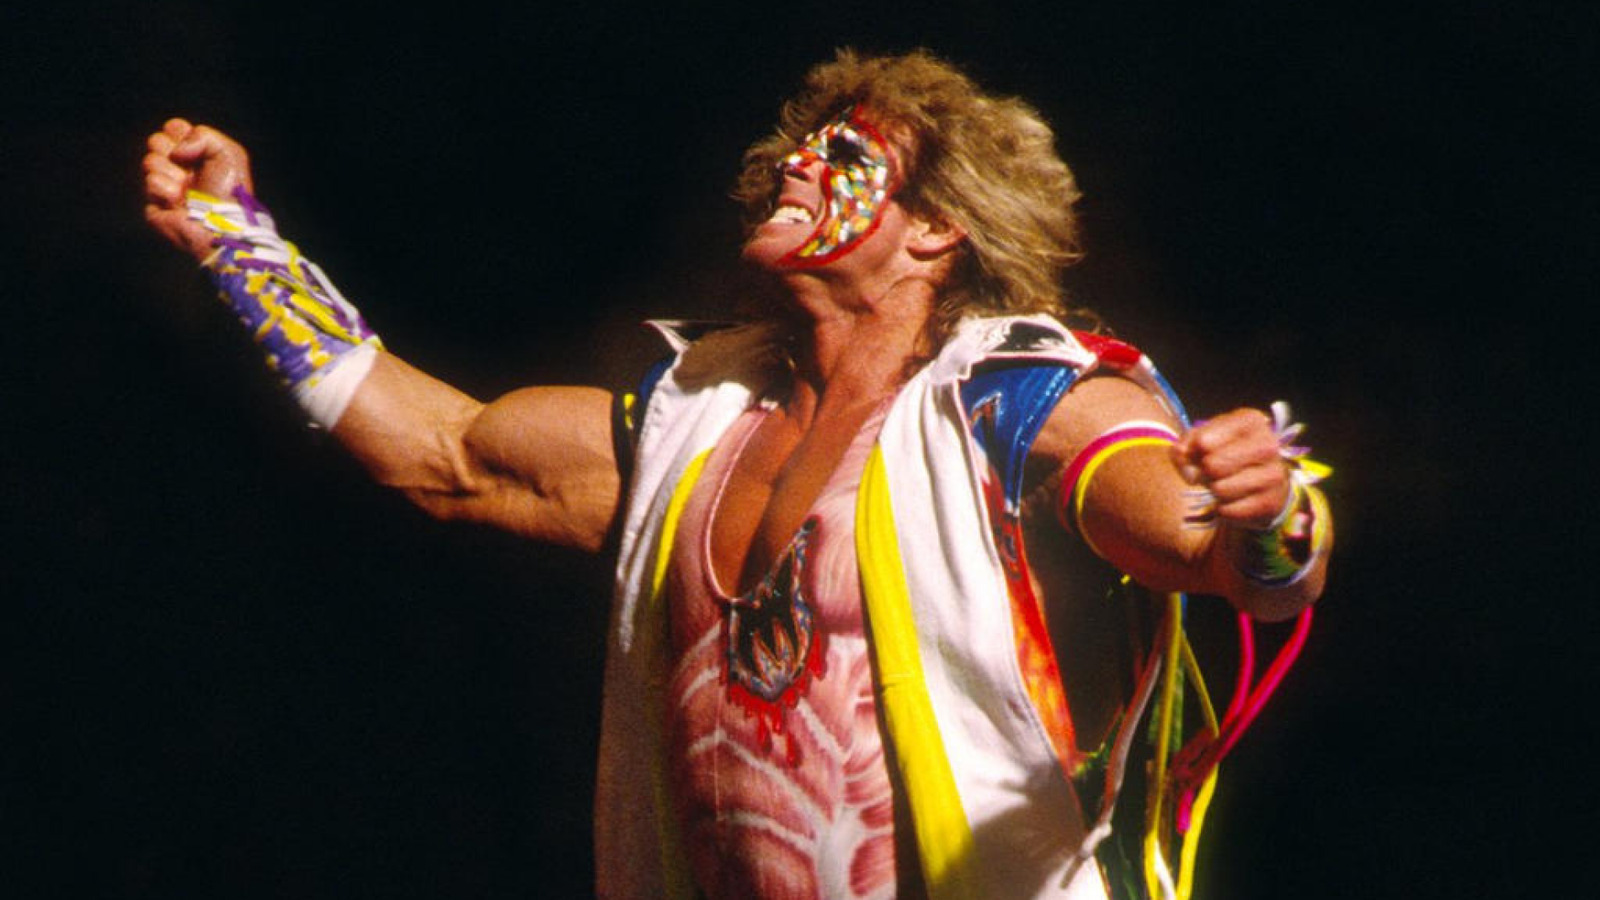 Tony Schiavone detalla su problema con WWF Star Ultimate Warrior